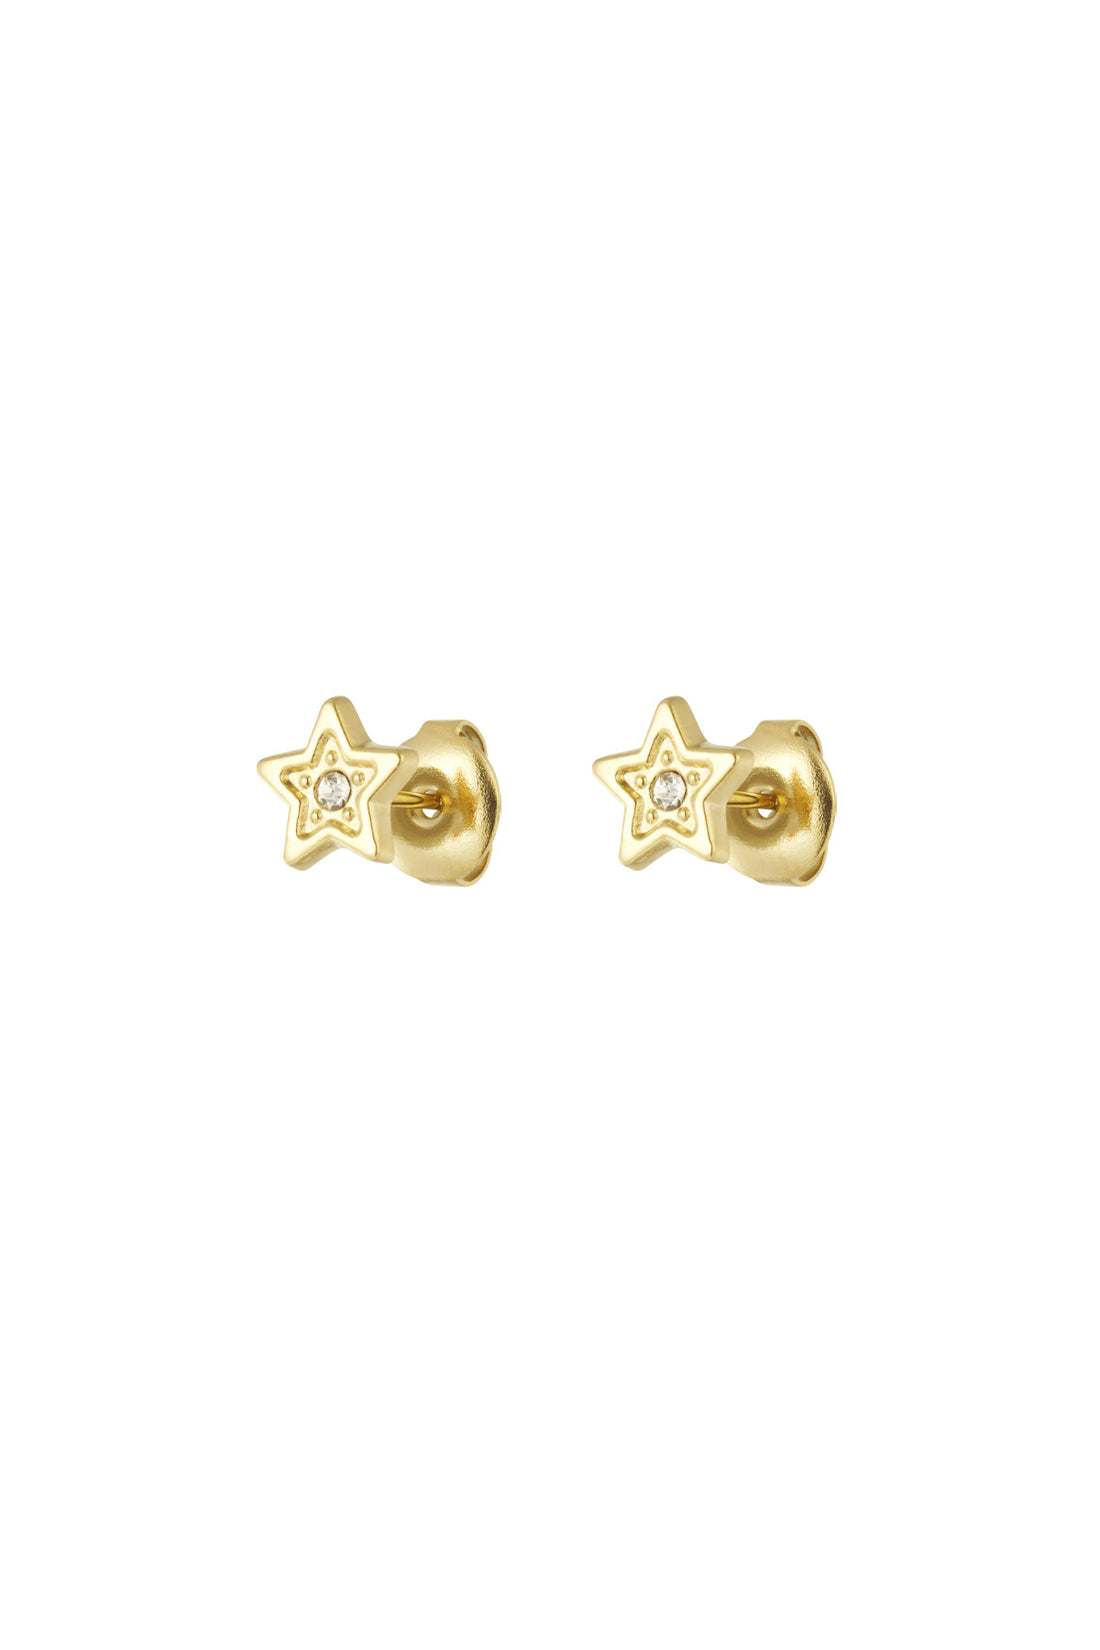 Ohrringe aus Chirurgenstahl für Kinder: Sterne Gold